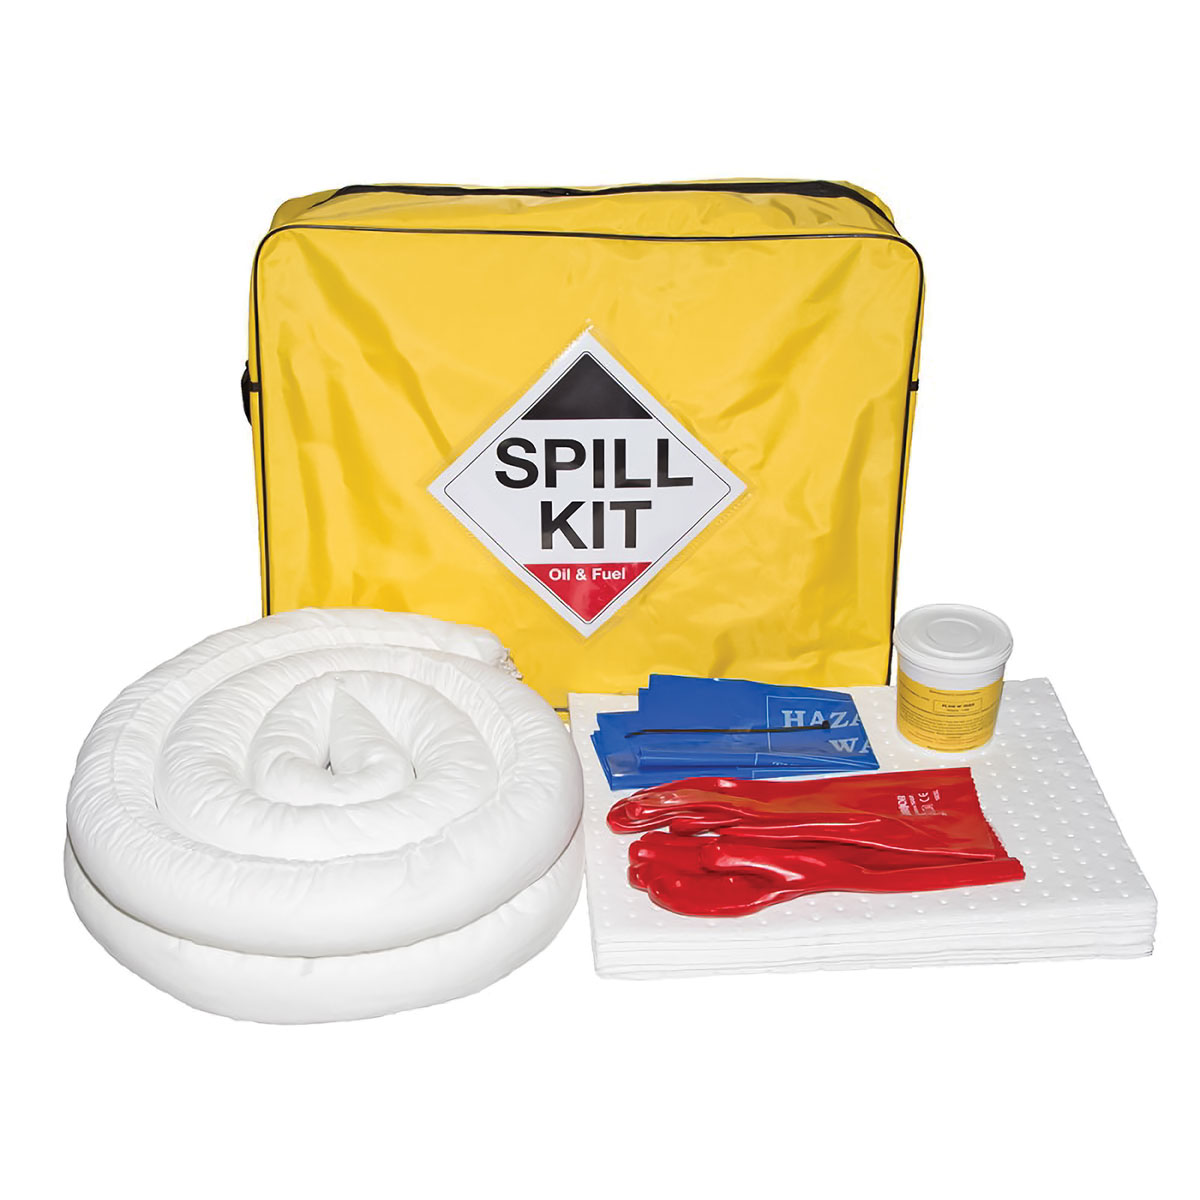 Oil & Fuel Spill Kit - Van Kit - Absorbs 50L